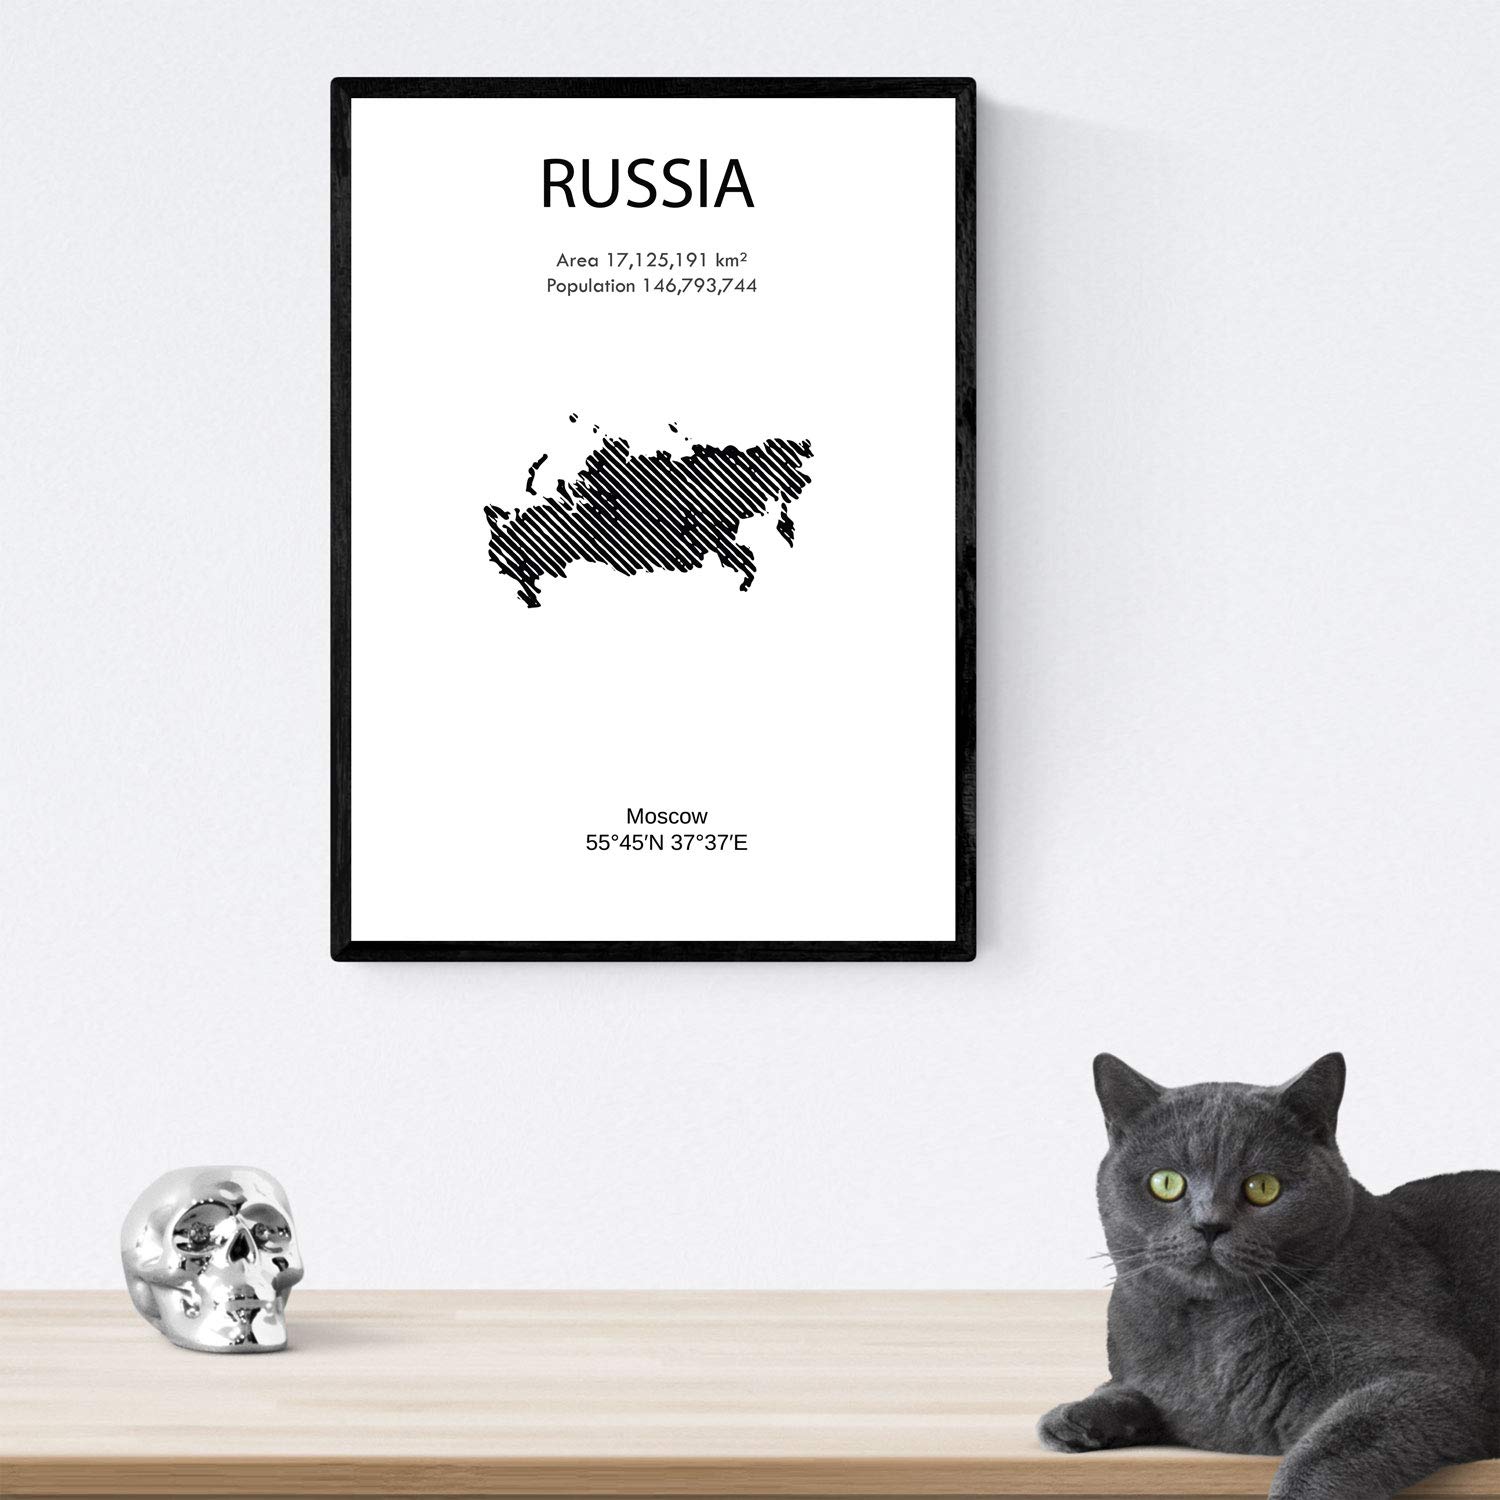 Pack de posters de paises y monumentos. Mapa ciudad de Moscu, monumento San Basilio y mapa Rusia.-Artwork-Nacnic-Nacnic Estudio SL